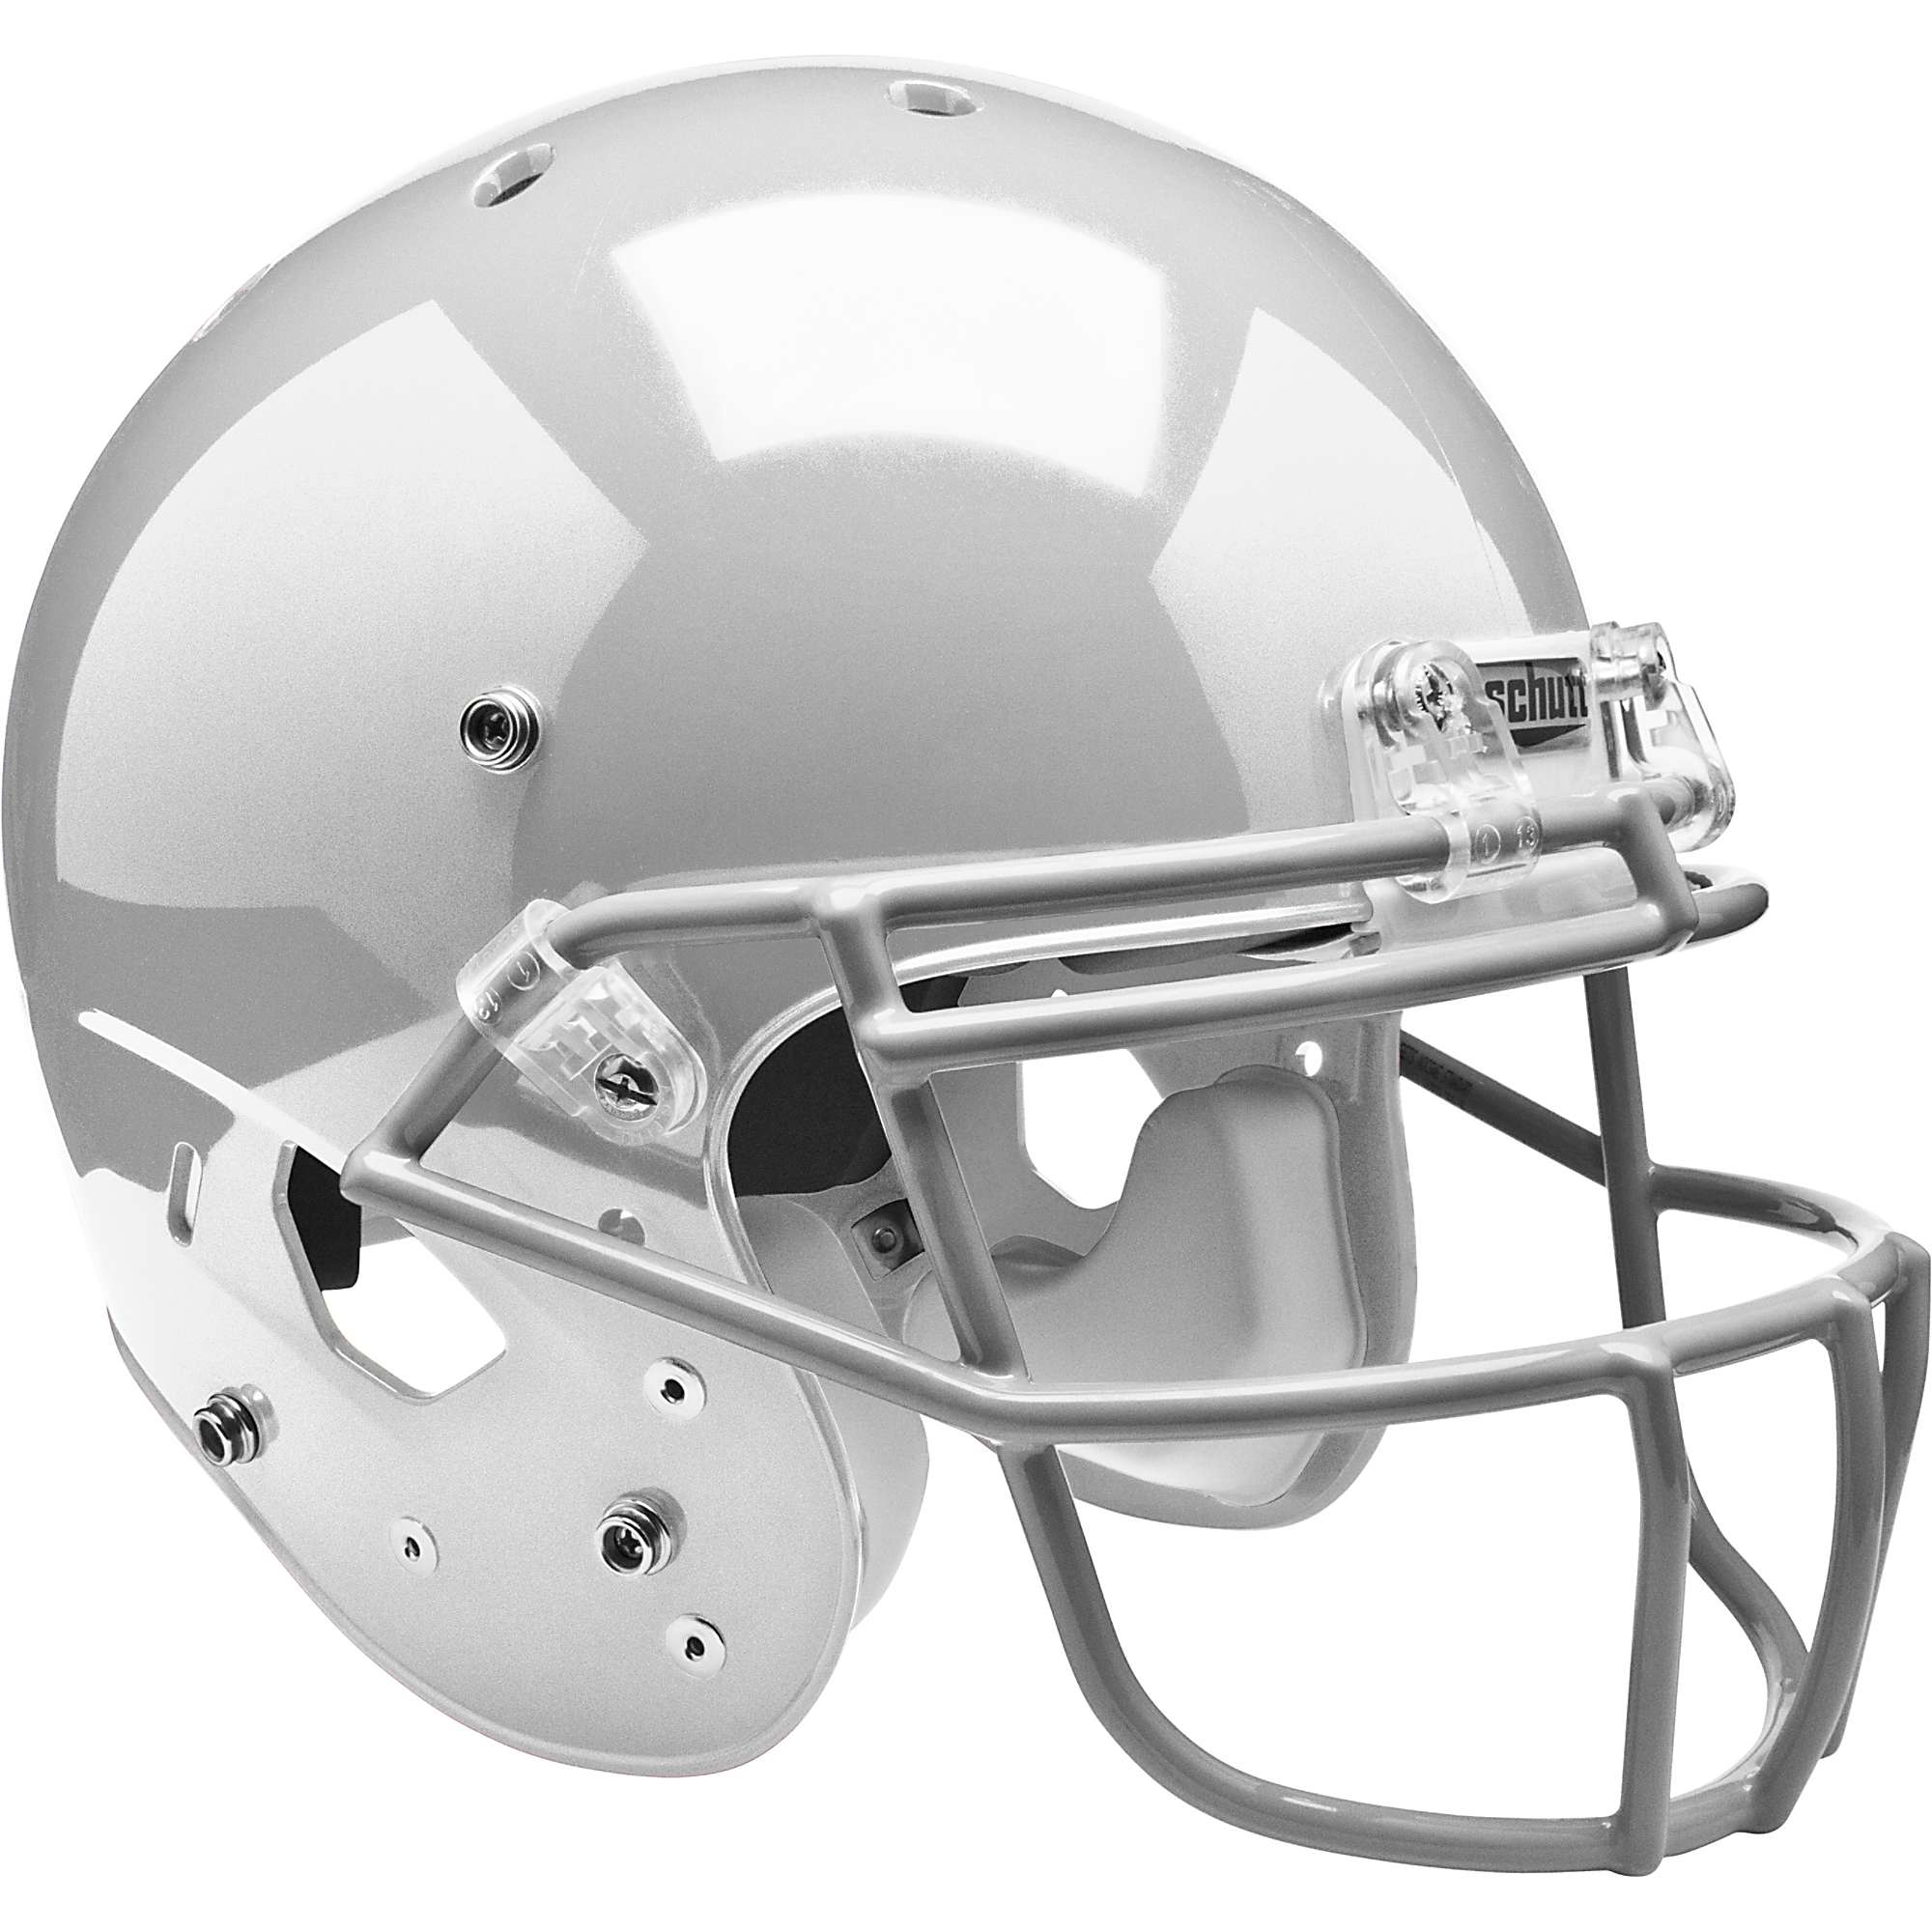 Schutt Youth Air Standard Iii Football Helmet W/ Facemask | eBay